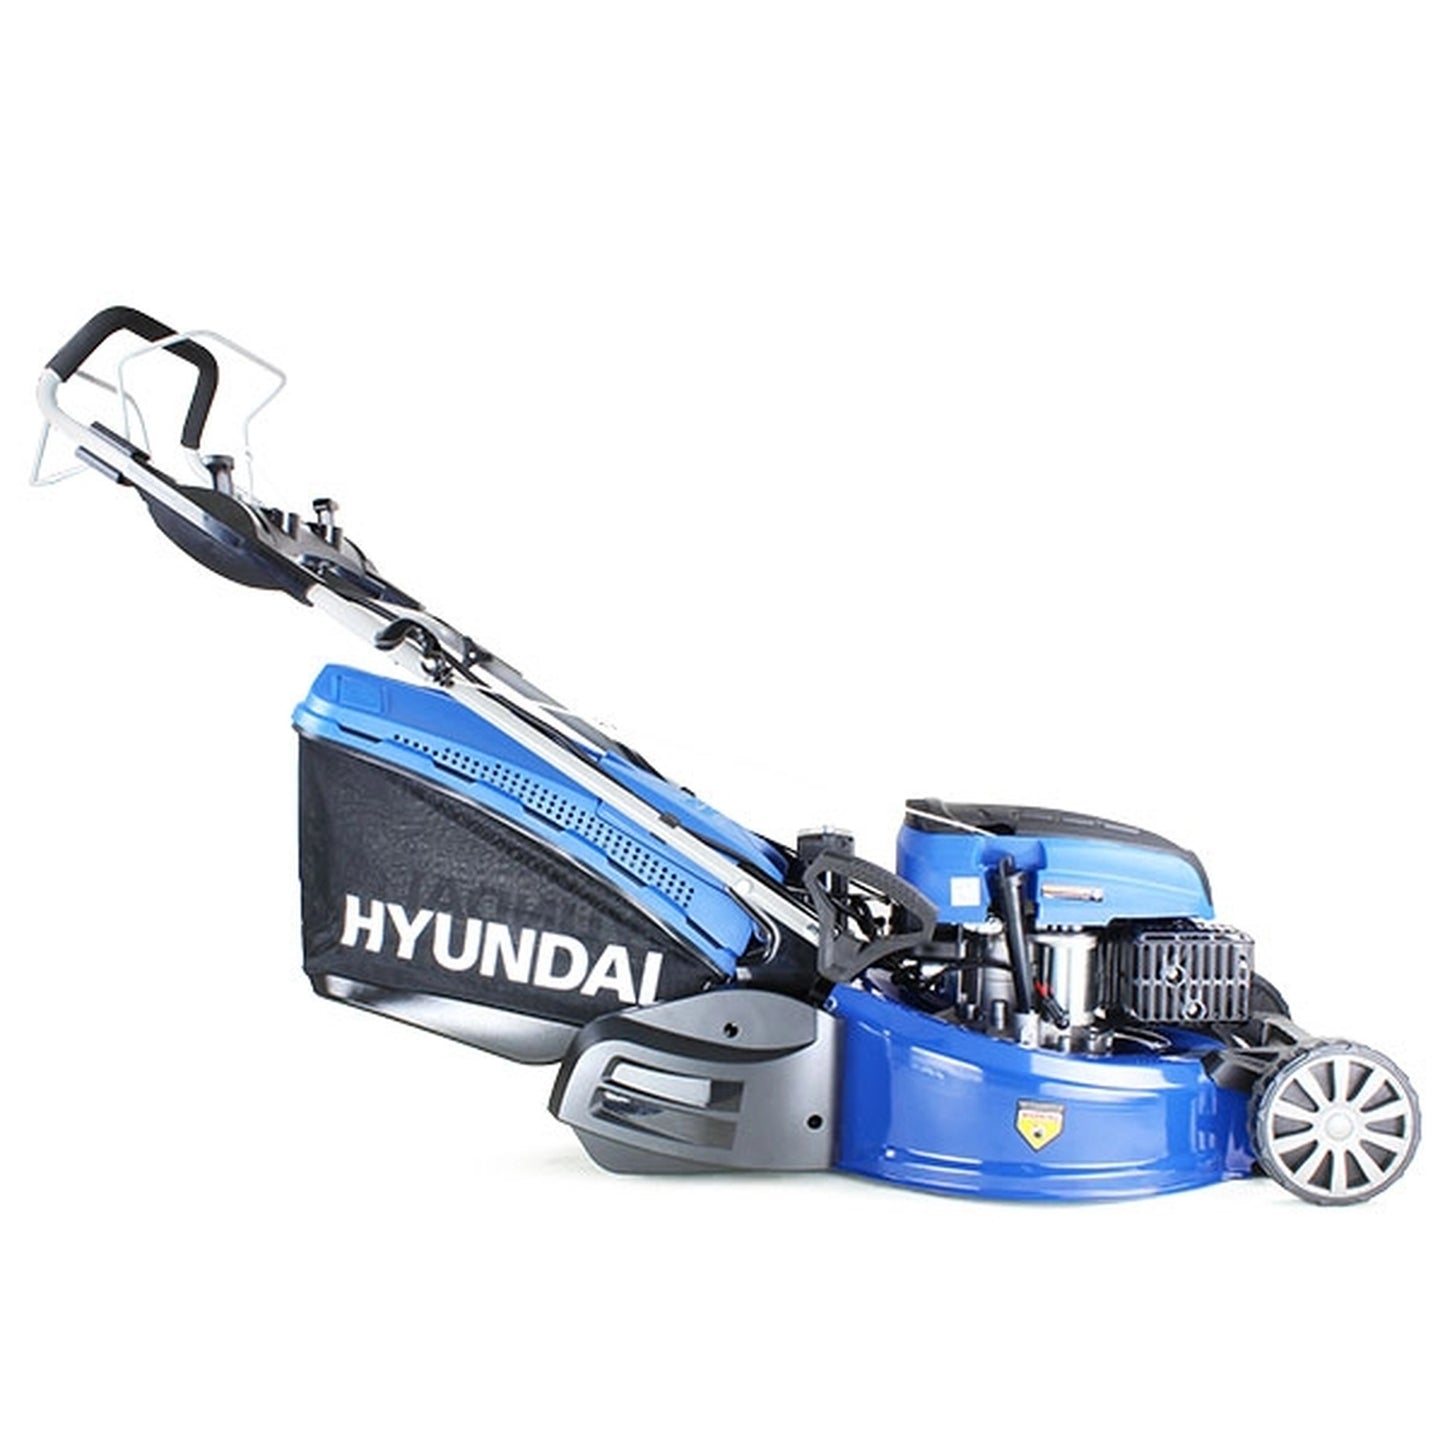 Hyundai HYM530SPER Self-Propelled Petrol Roller Lawn Mower 53cm